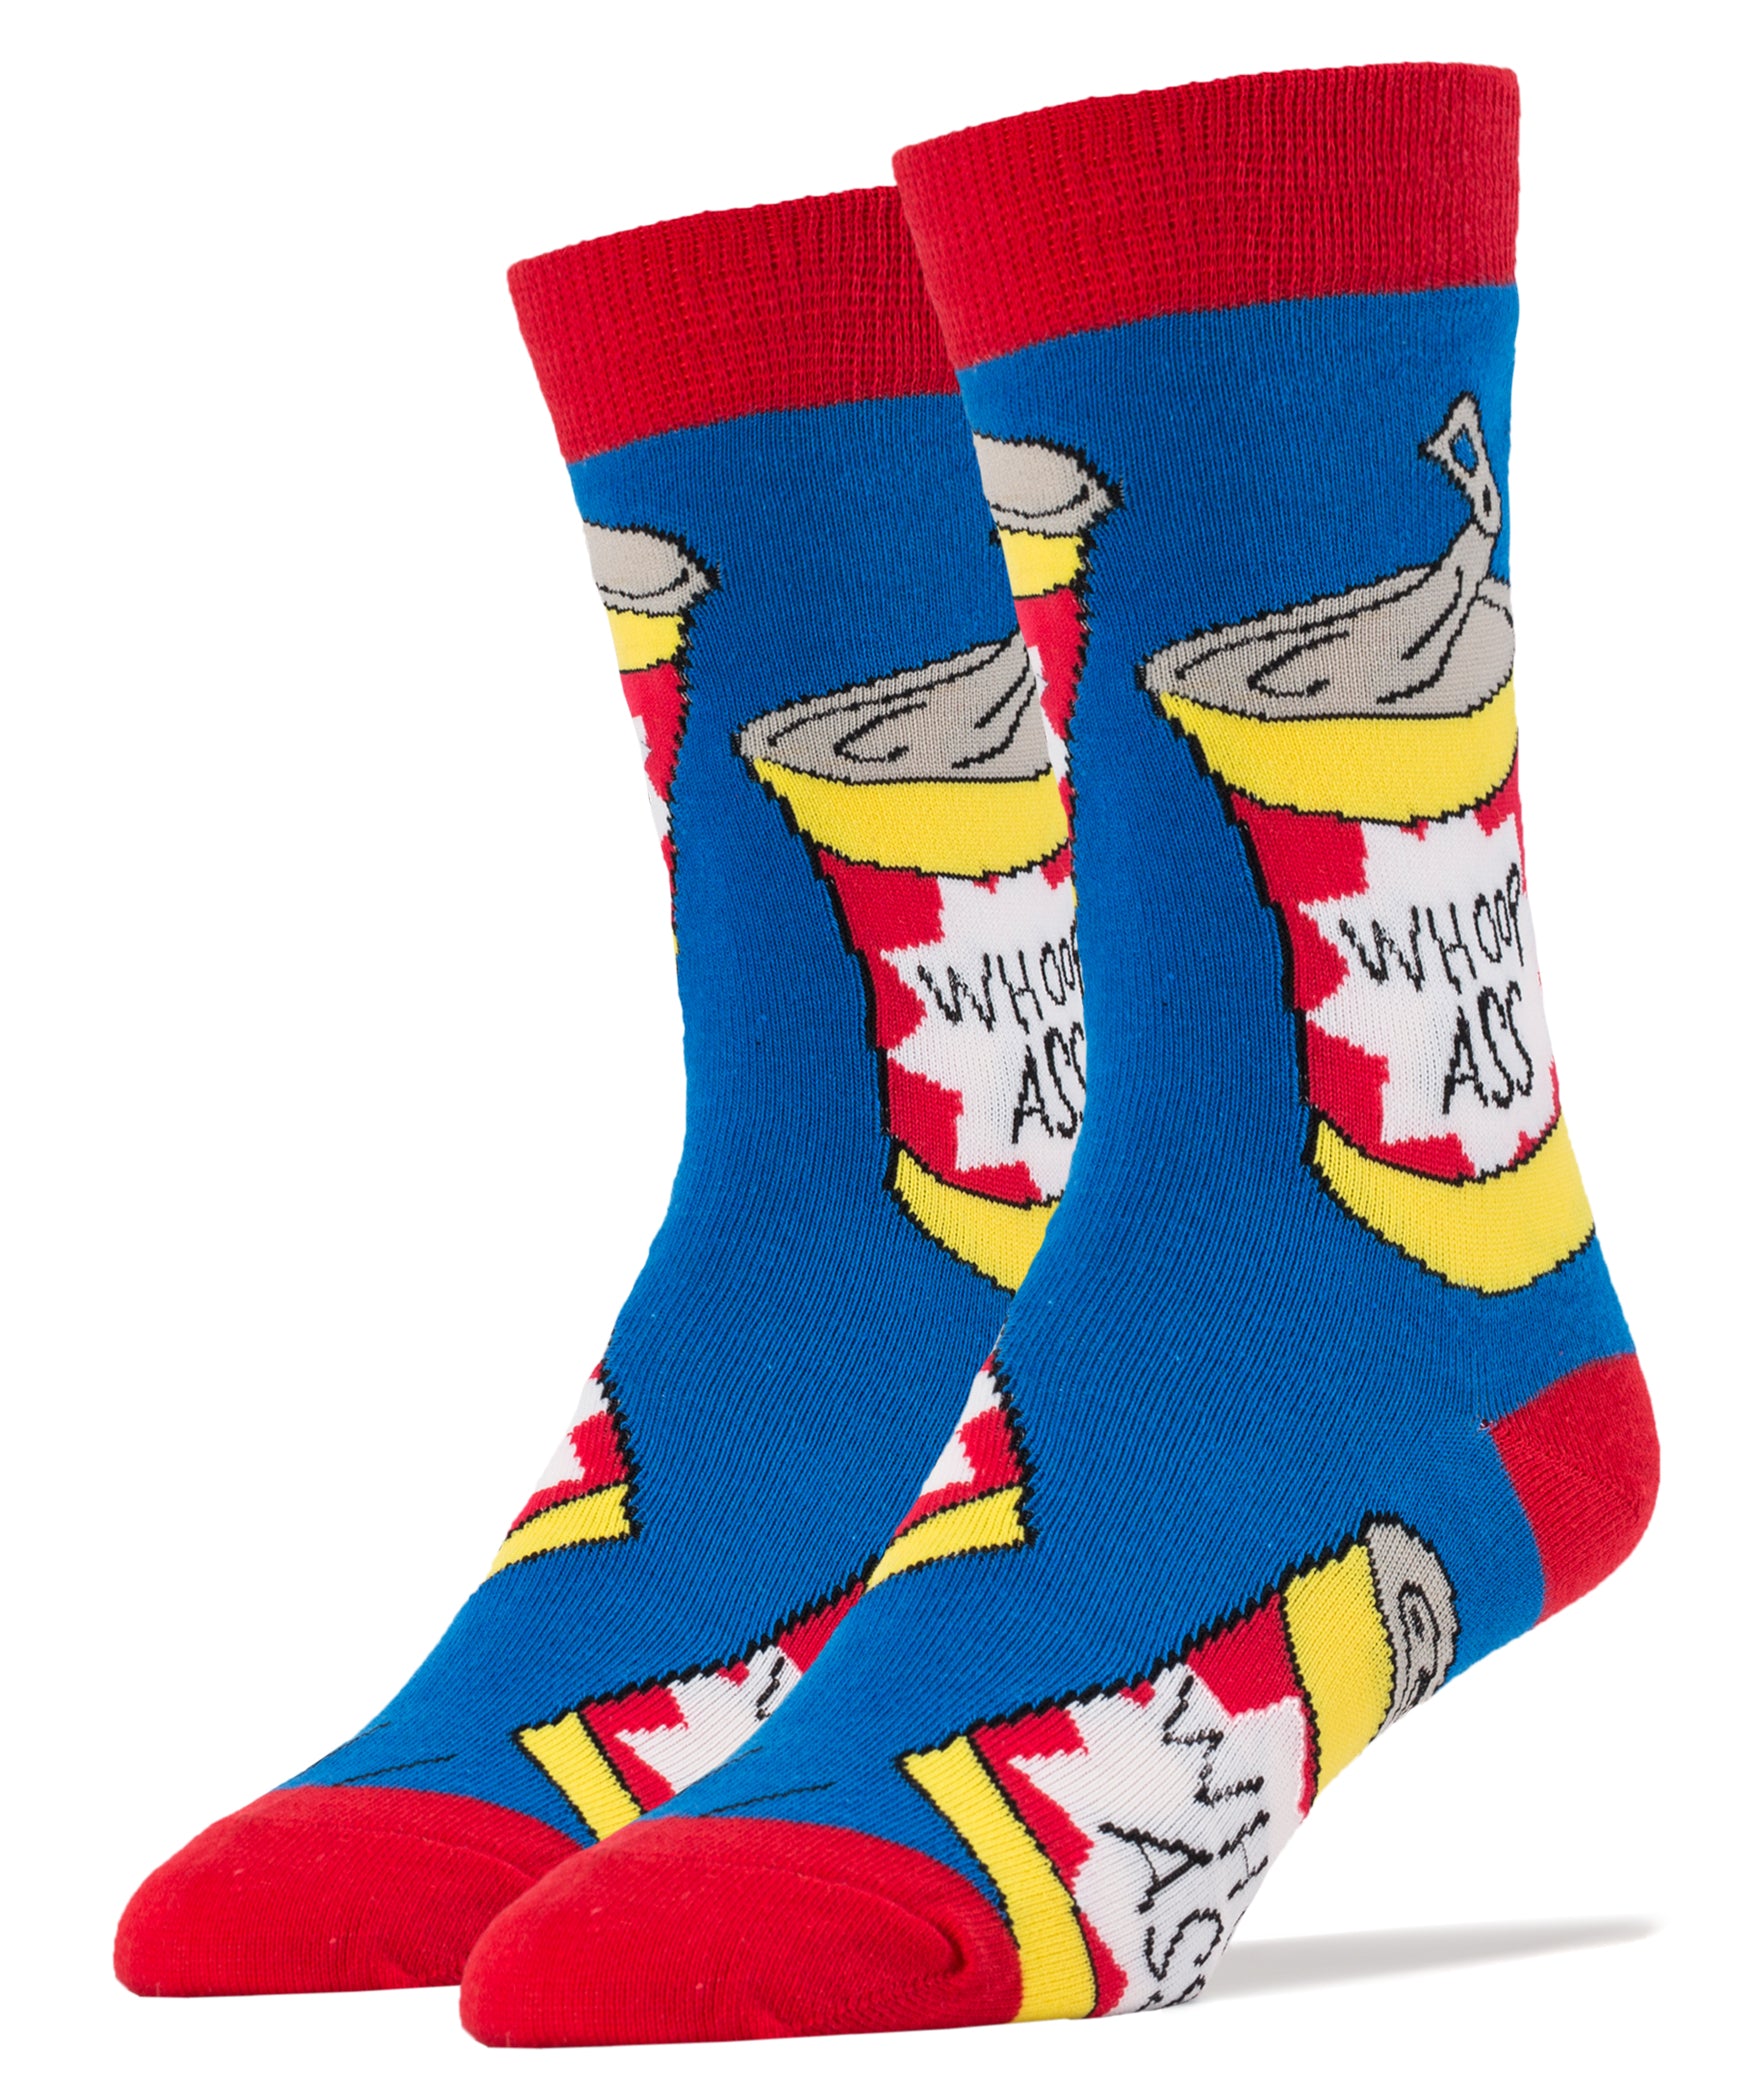 Men's Adult Humor Socks, Inappropriate Socks Funny